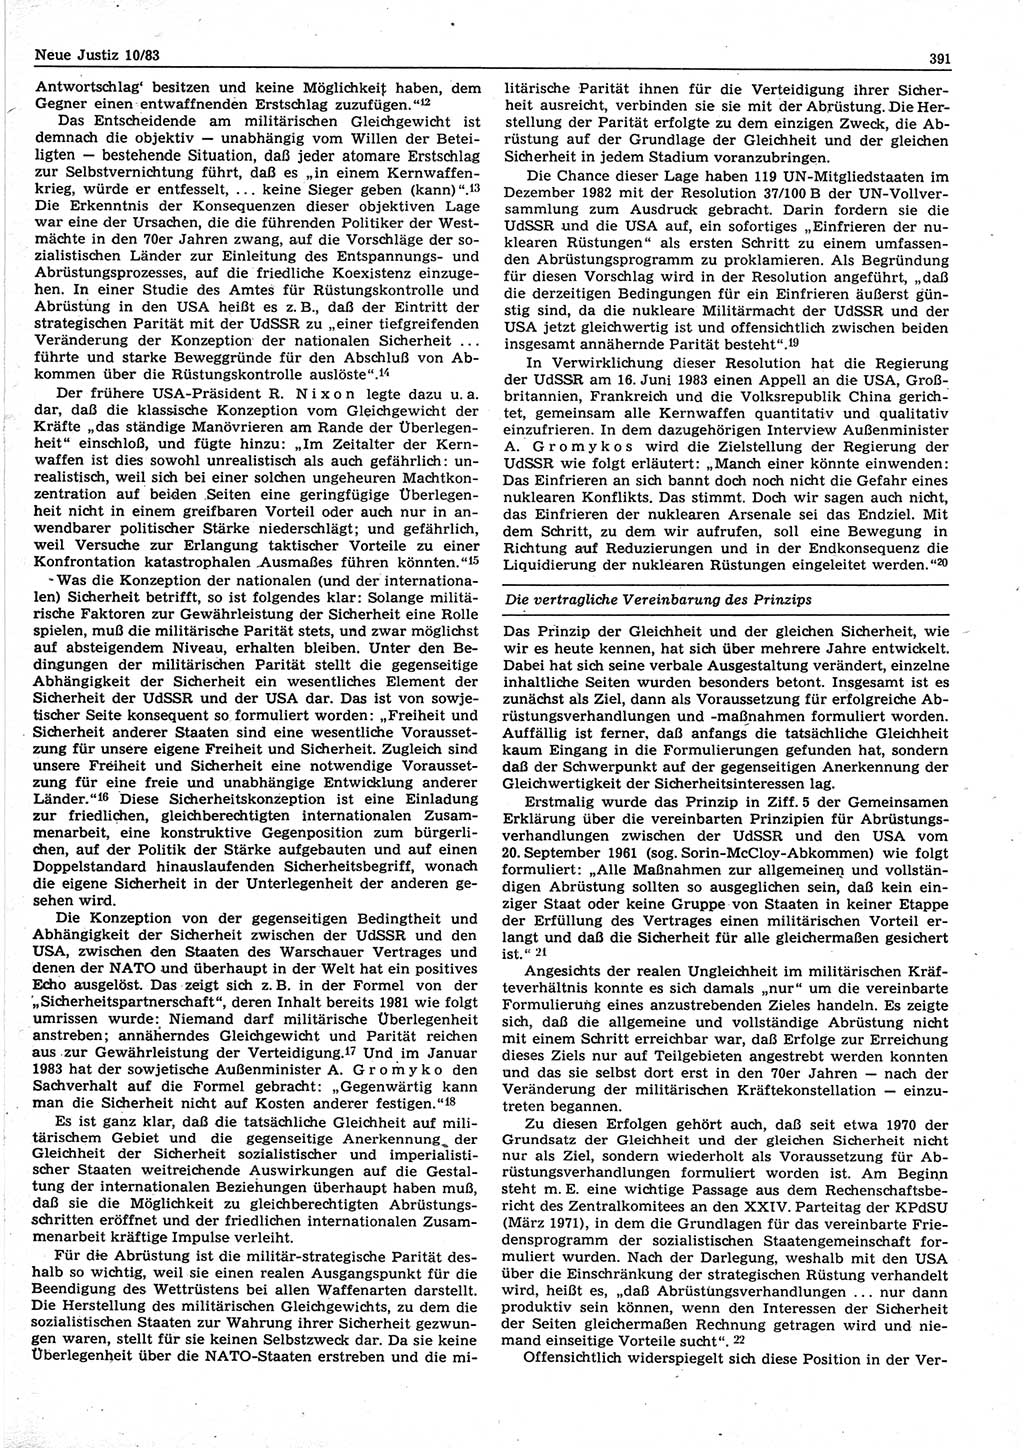 Neue Justiz (NJ), Zeitschrift für sozialistisches Recht und Gesetzlichkeit [Deutsche Demokratische Republik (DDR)], 37. Jahrgang 1983, Seite 391 (NJ DDR 1983, S. 391)